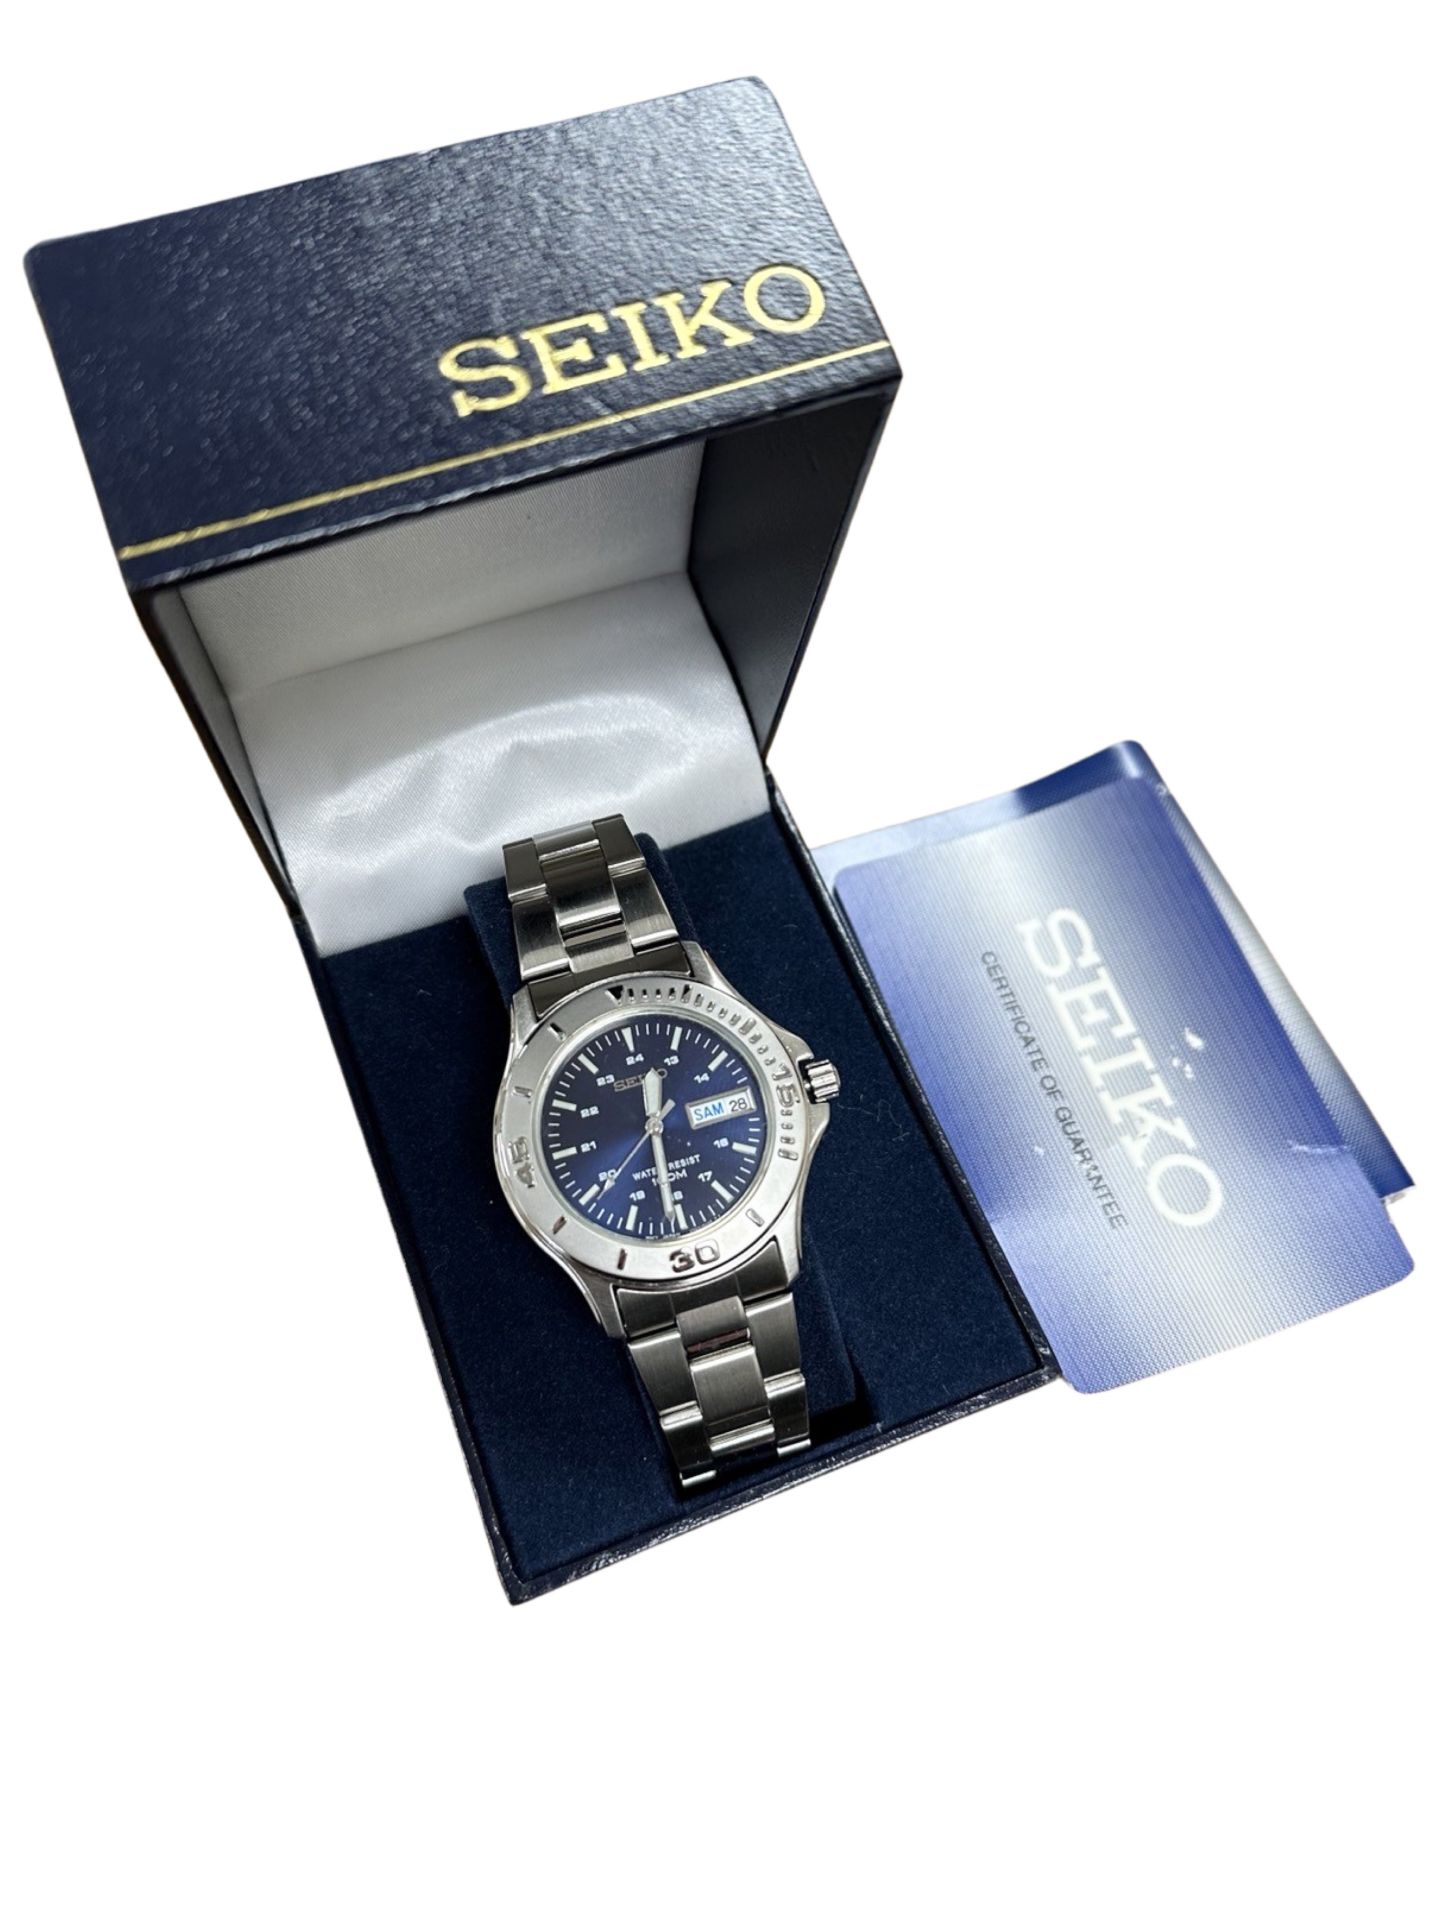 A gentlemen's Seiko sports watch, in retail box.